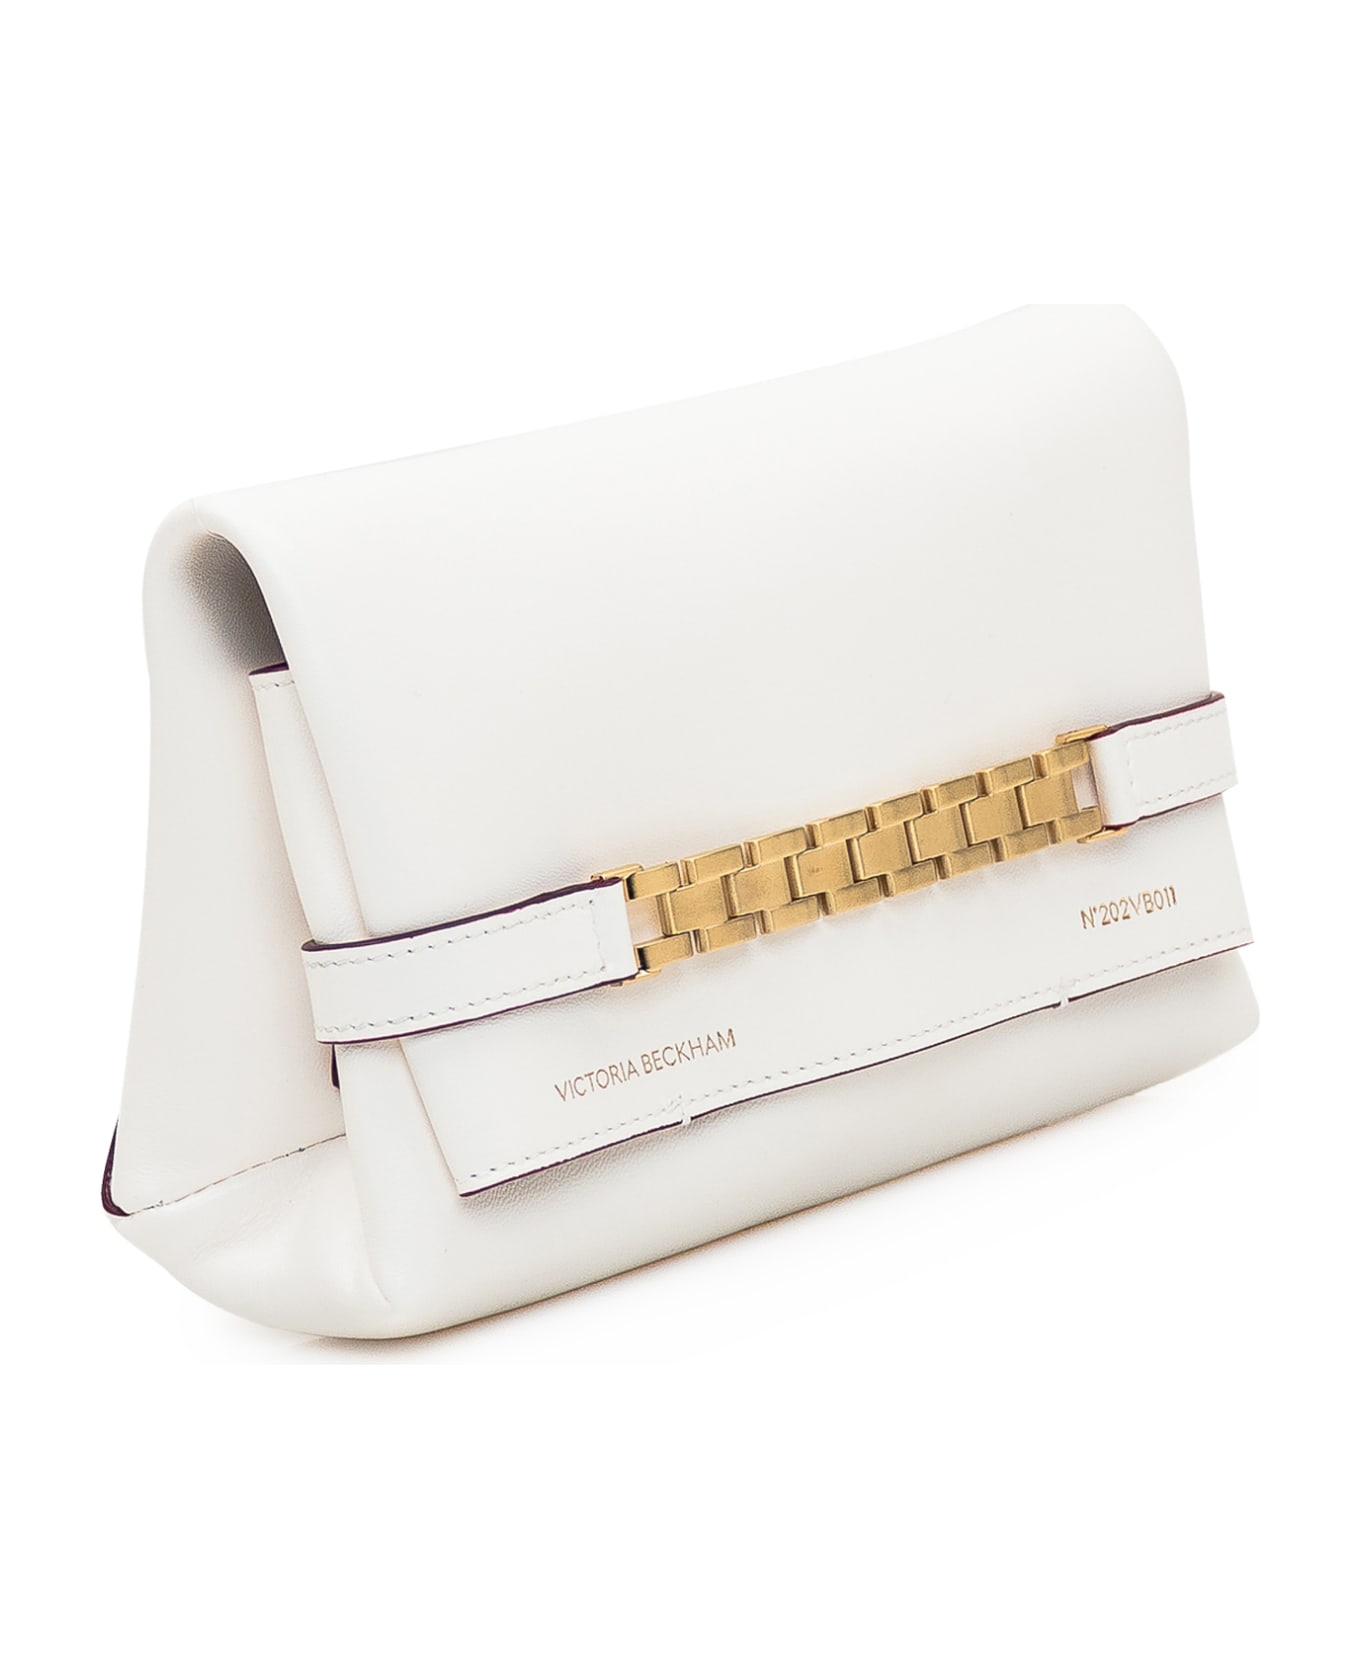 Victoria Beckham Mini Pouch Bag - WHITE クラッチバッグ